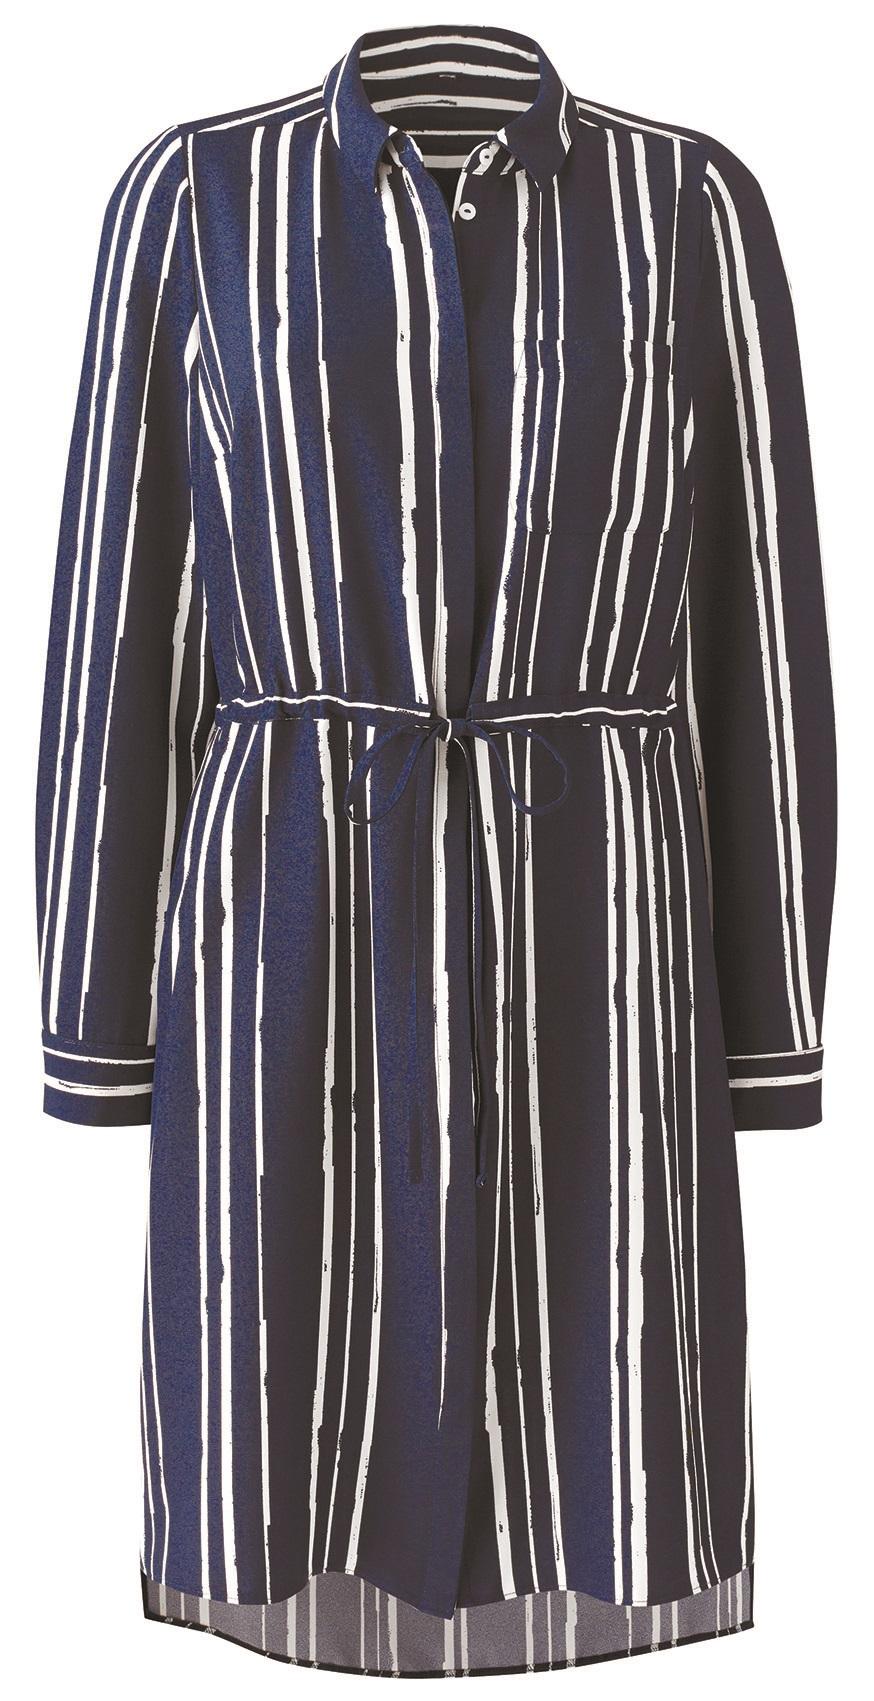 JD Williams, Stripe Shirt Dress, £20